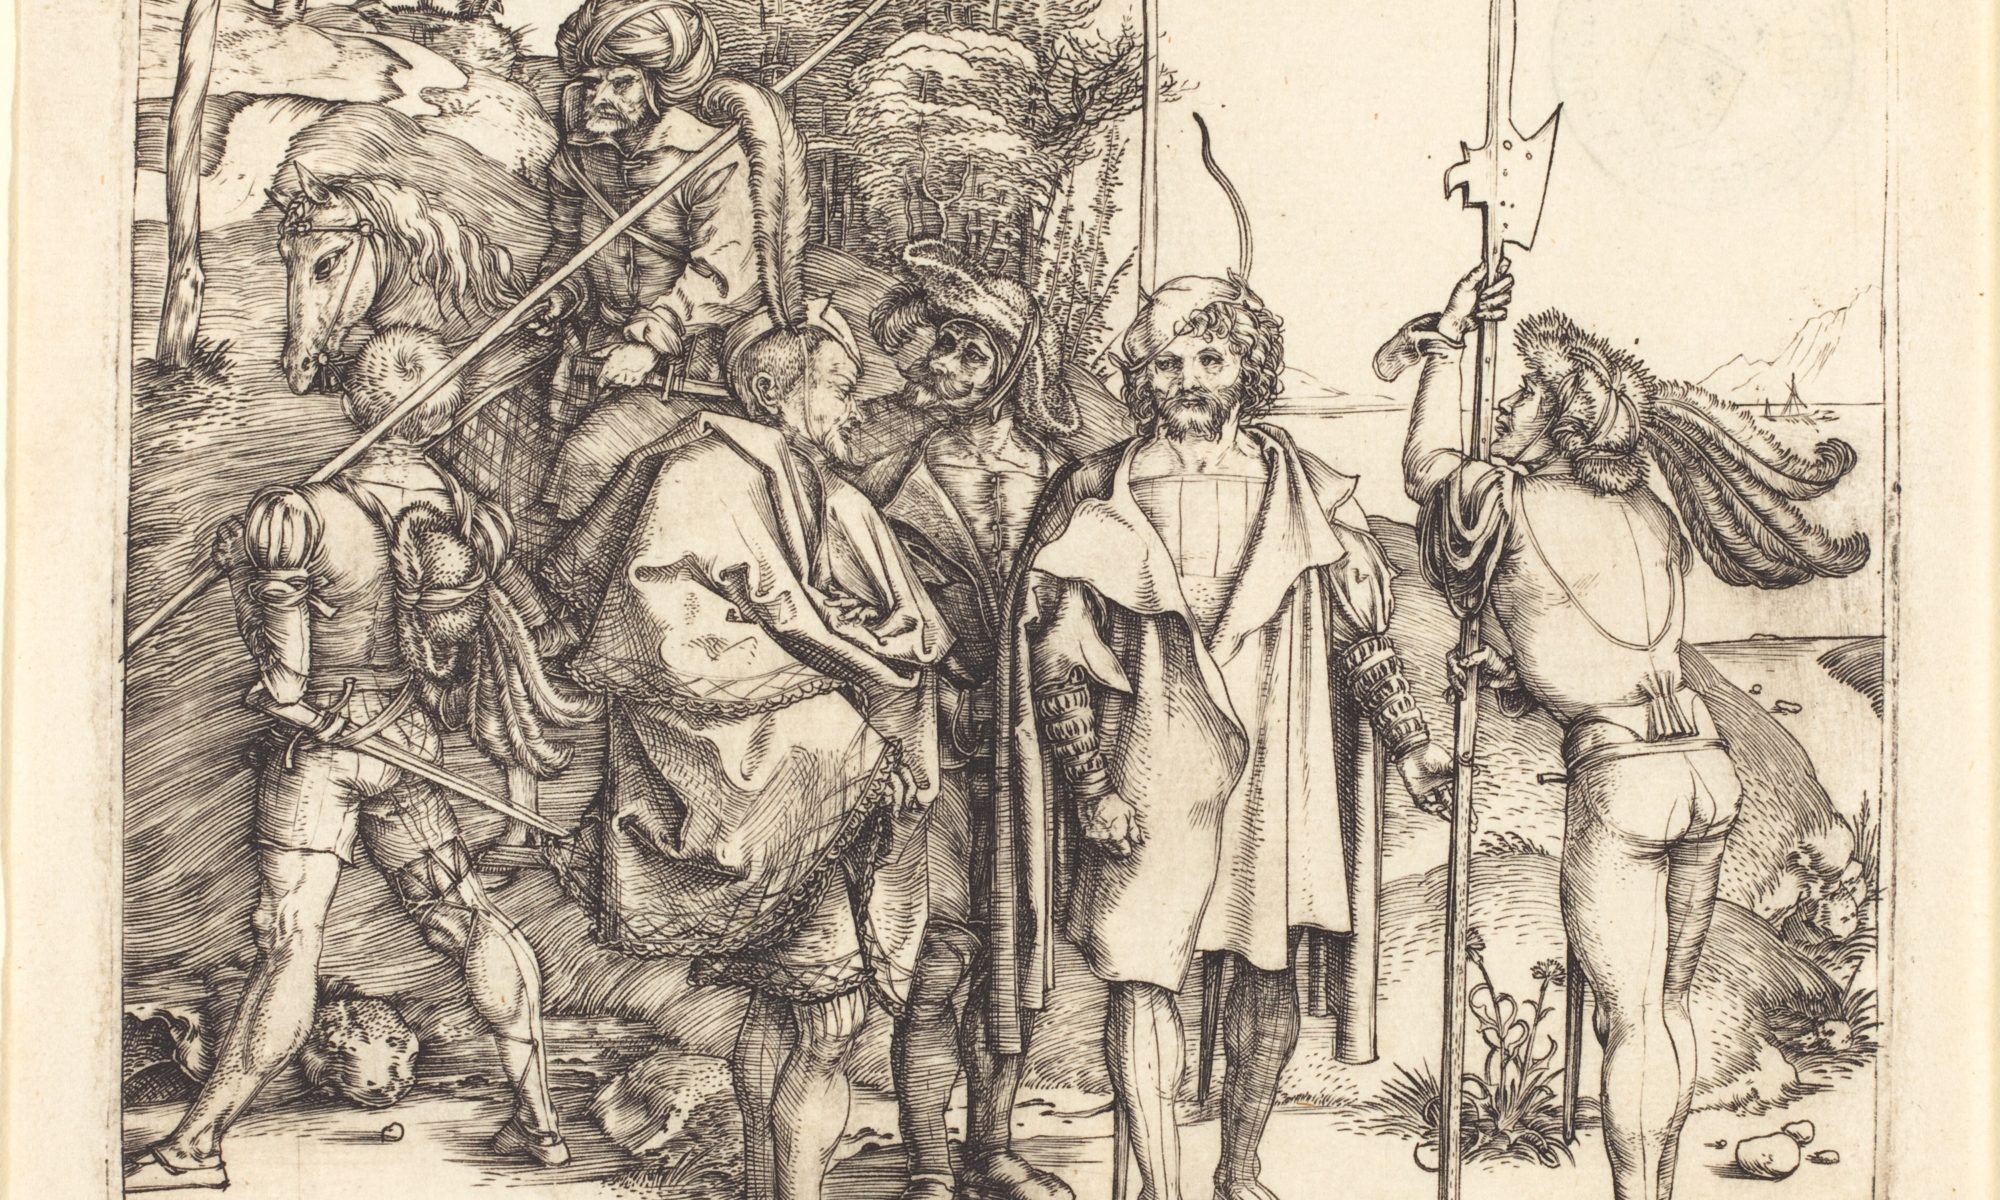 "Five Soliders and a Turk on Horseback" by Albrecht Dürer